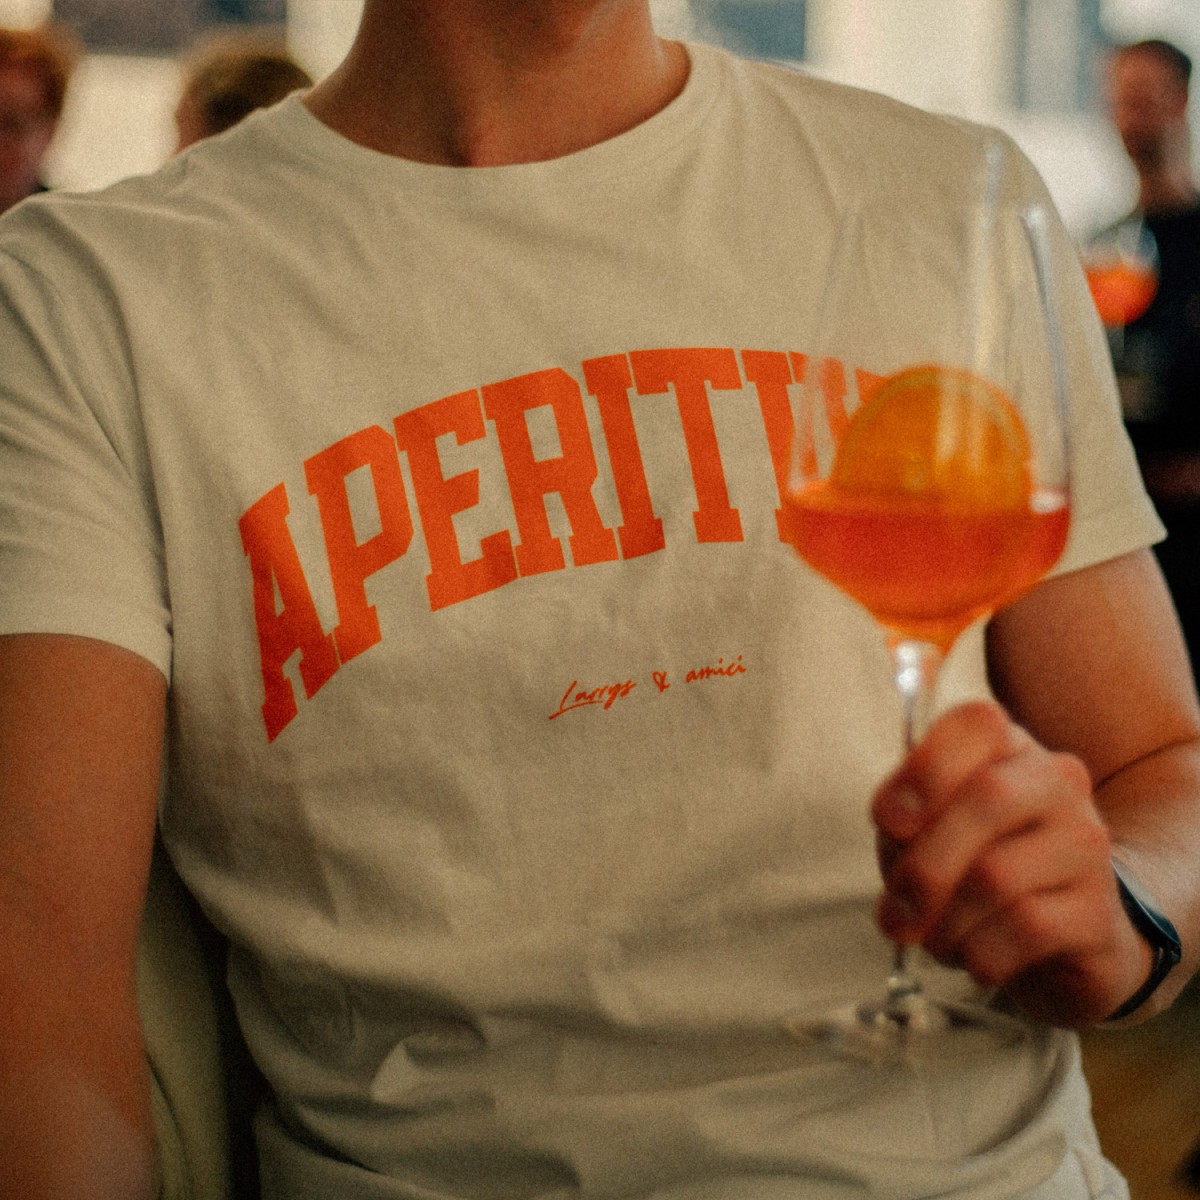 aperitivo shirt - larrys fashion